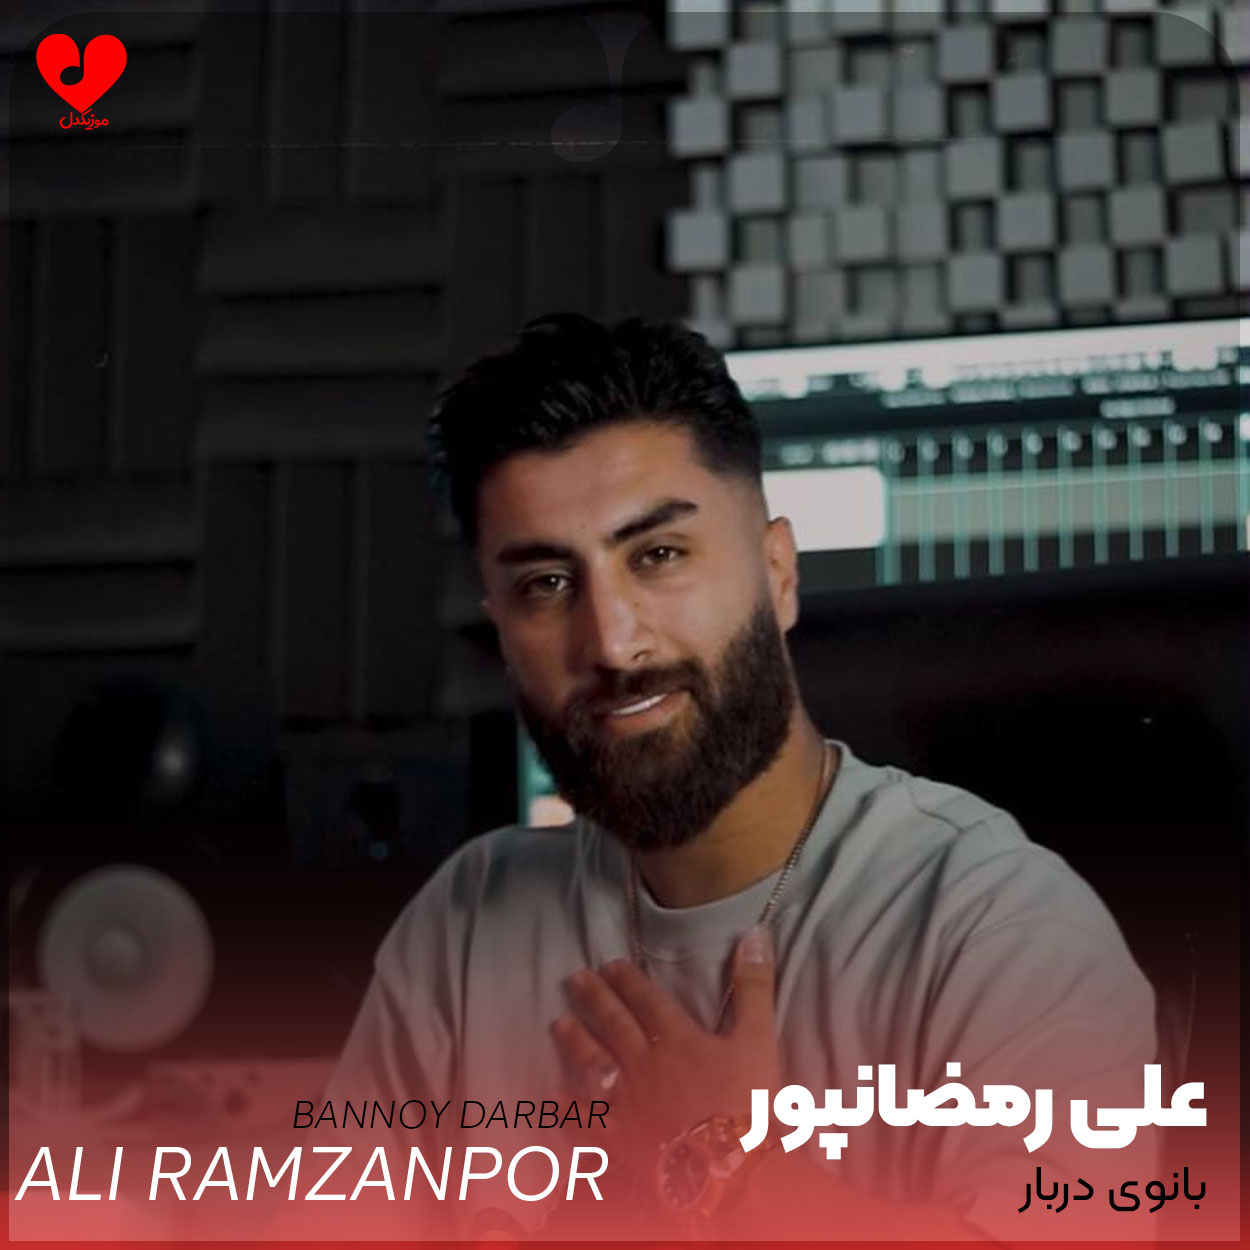 دانلود آهنگ بانوی دربار از علی رمضانپور